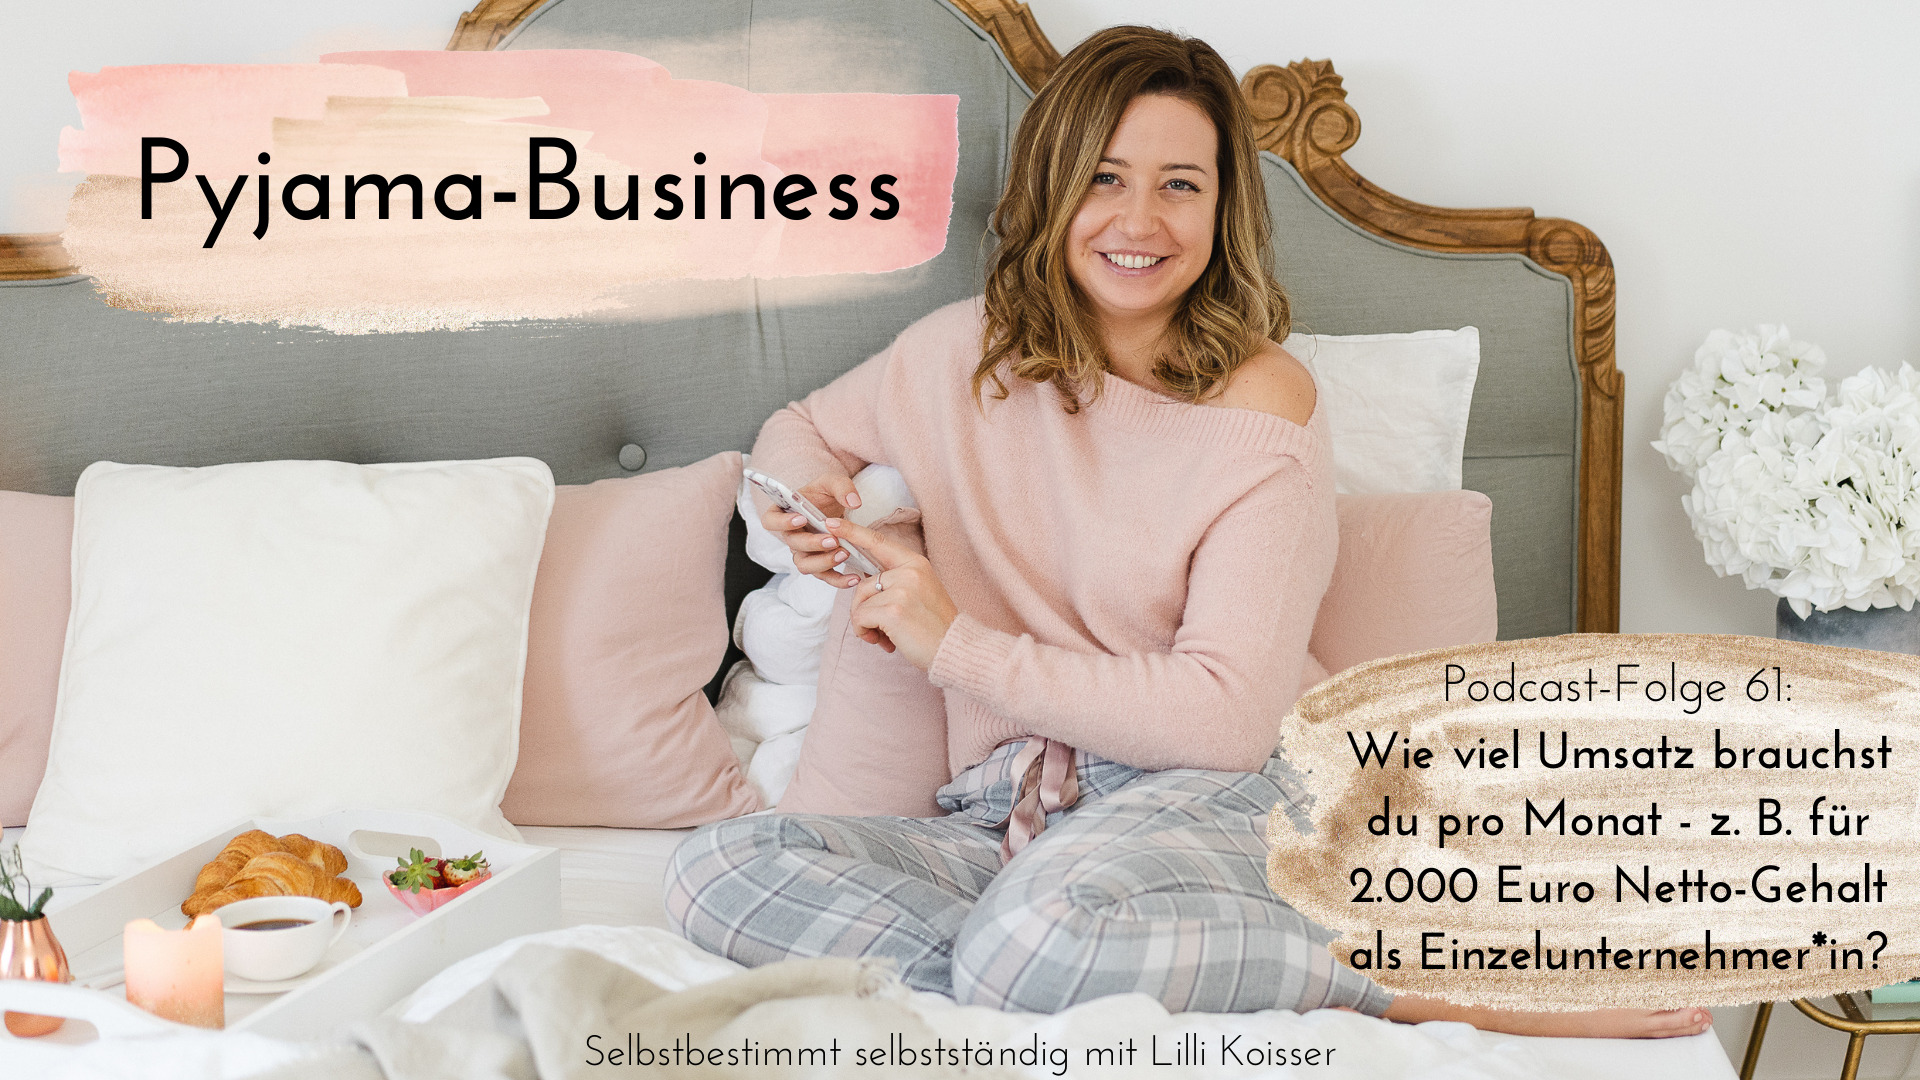 Pyjama-Business Podcast Folge 61: Wie viel Umsatz brauchst du pro Monat - z. B. für 2.000 Euro Netto-Gehalt als Einzelunternehmer*in